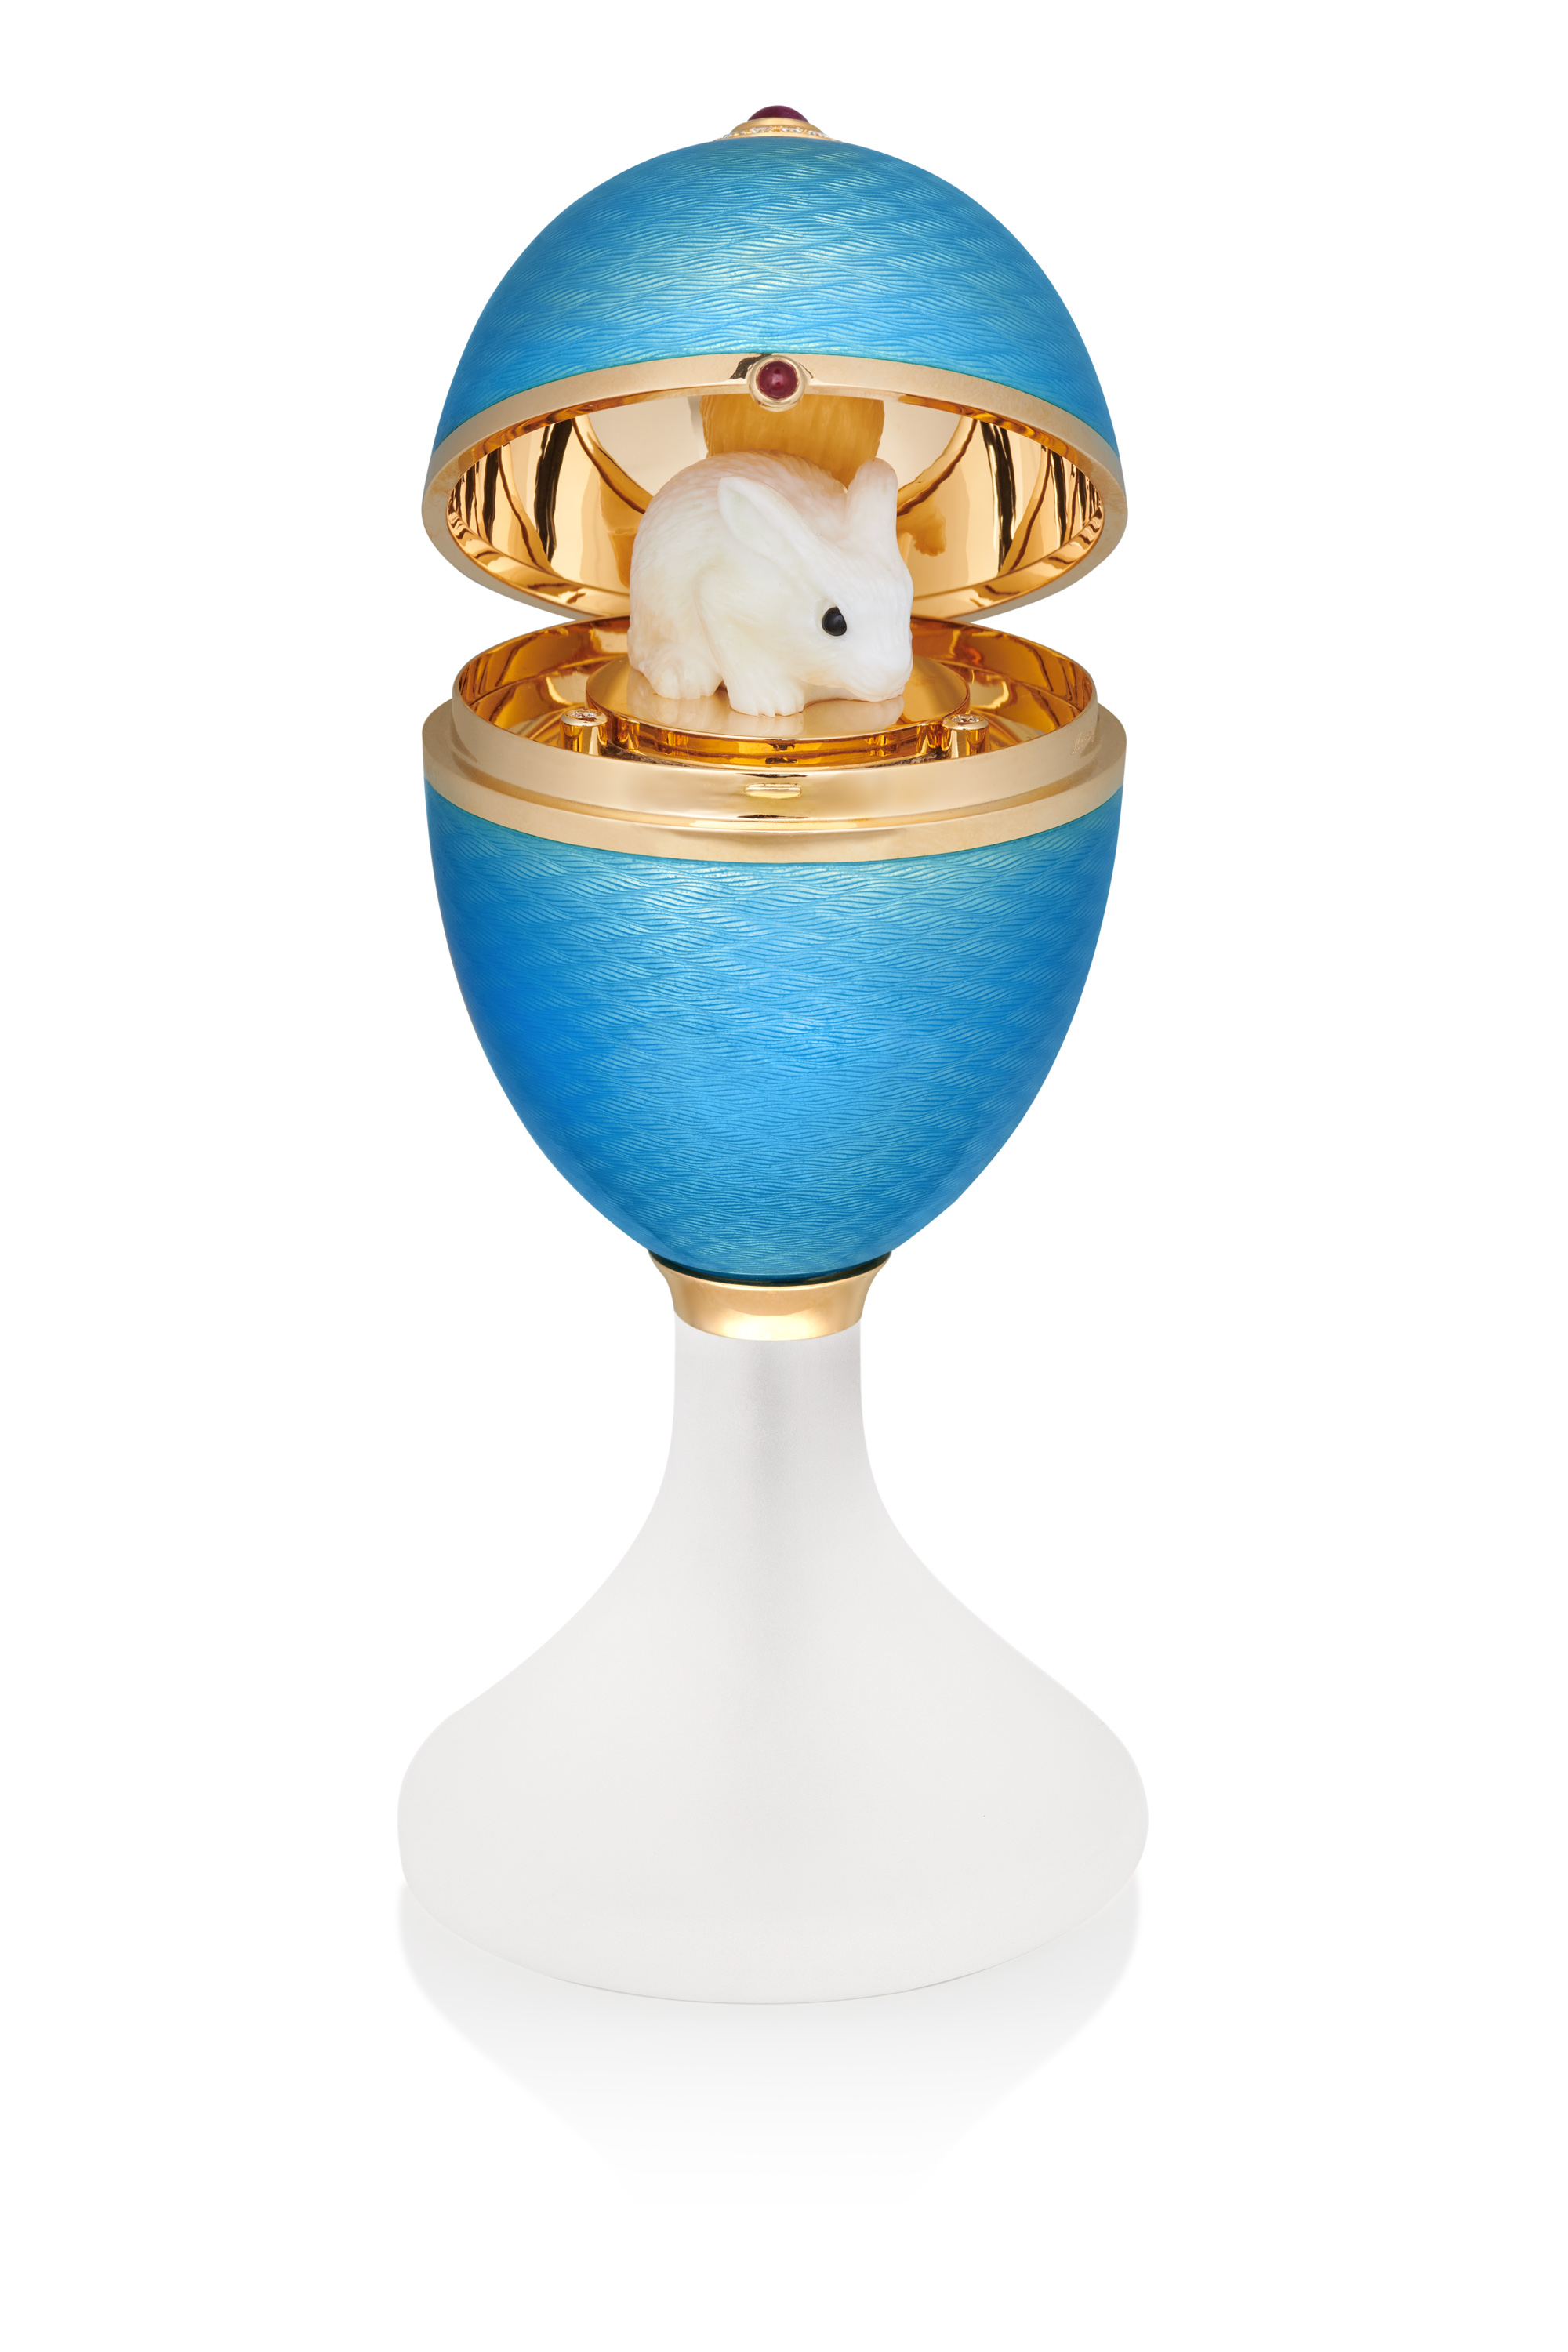 Подарочное яйцо Mercury Enamel из желтого золота с голубой эмалью, бриллиантами и рубинами. Внутри яйца съемная фигурка в виде зайца из белого опала с ониксом